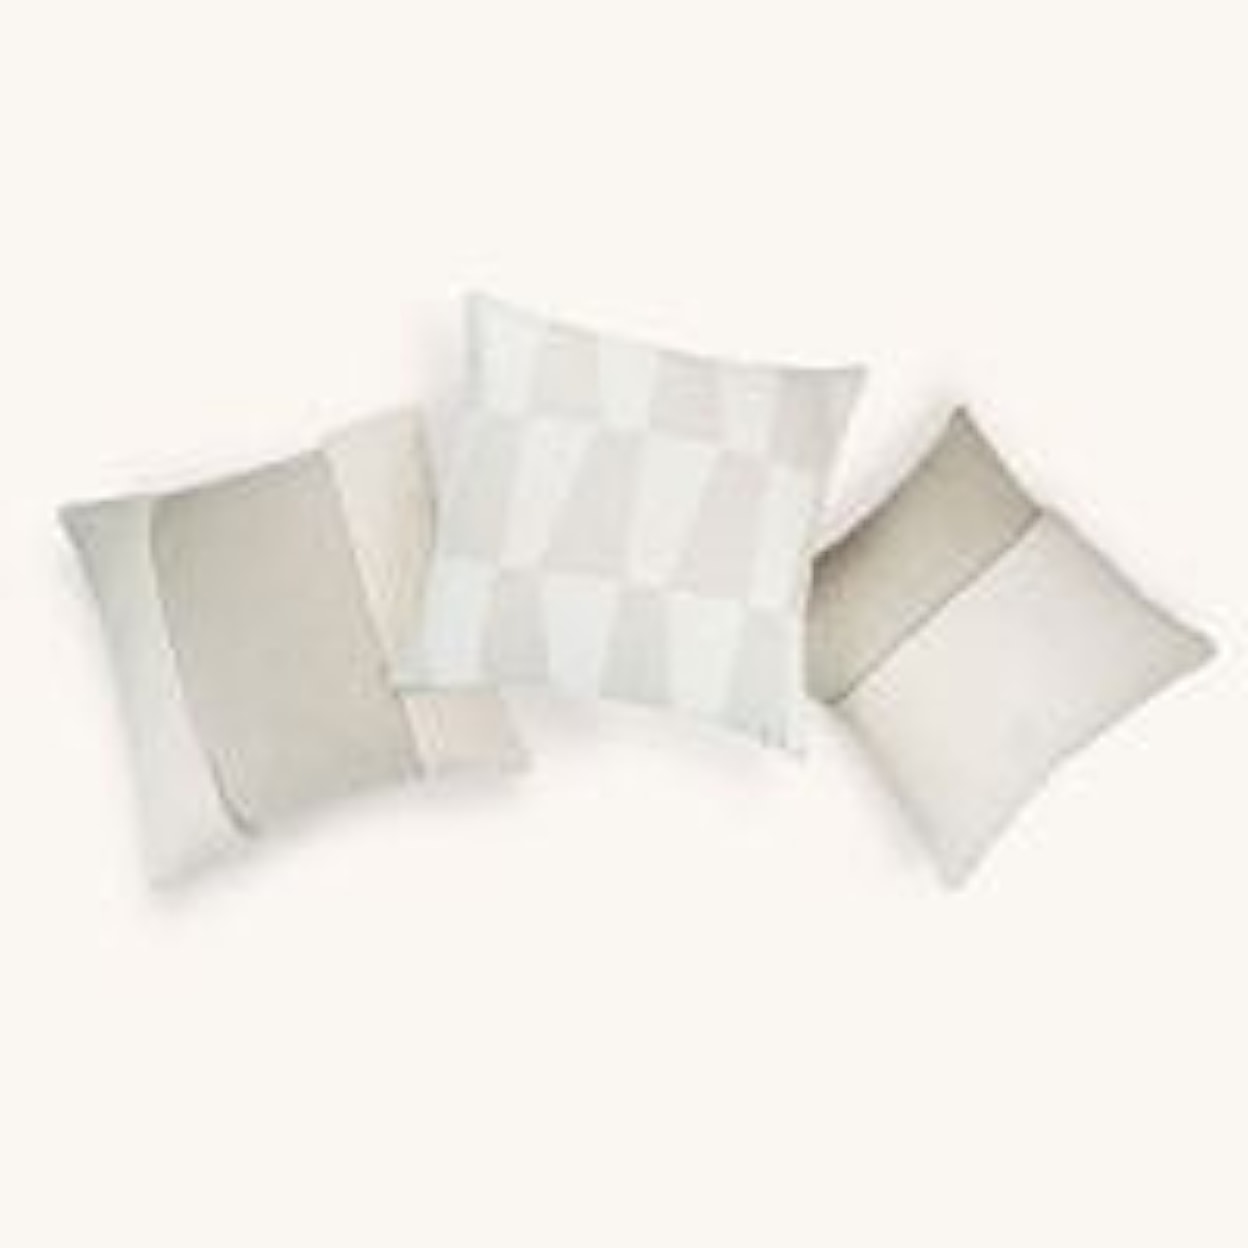 D.V. KAP Home Indoor Pillows ST. MORITZ CREAM 24" PILLOW